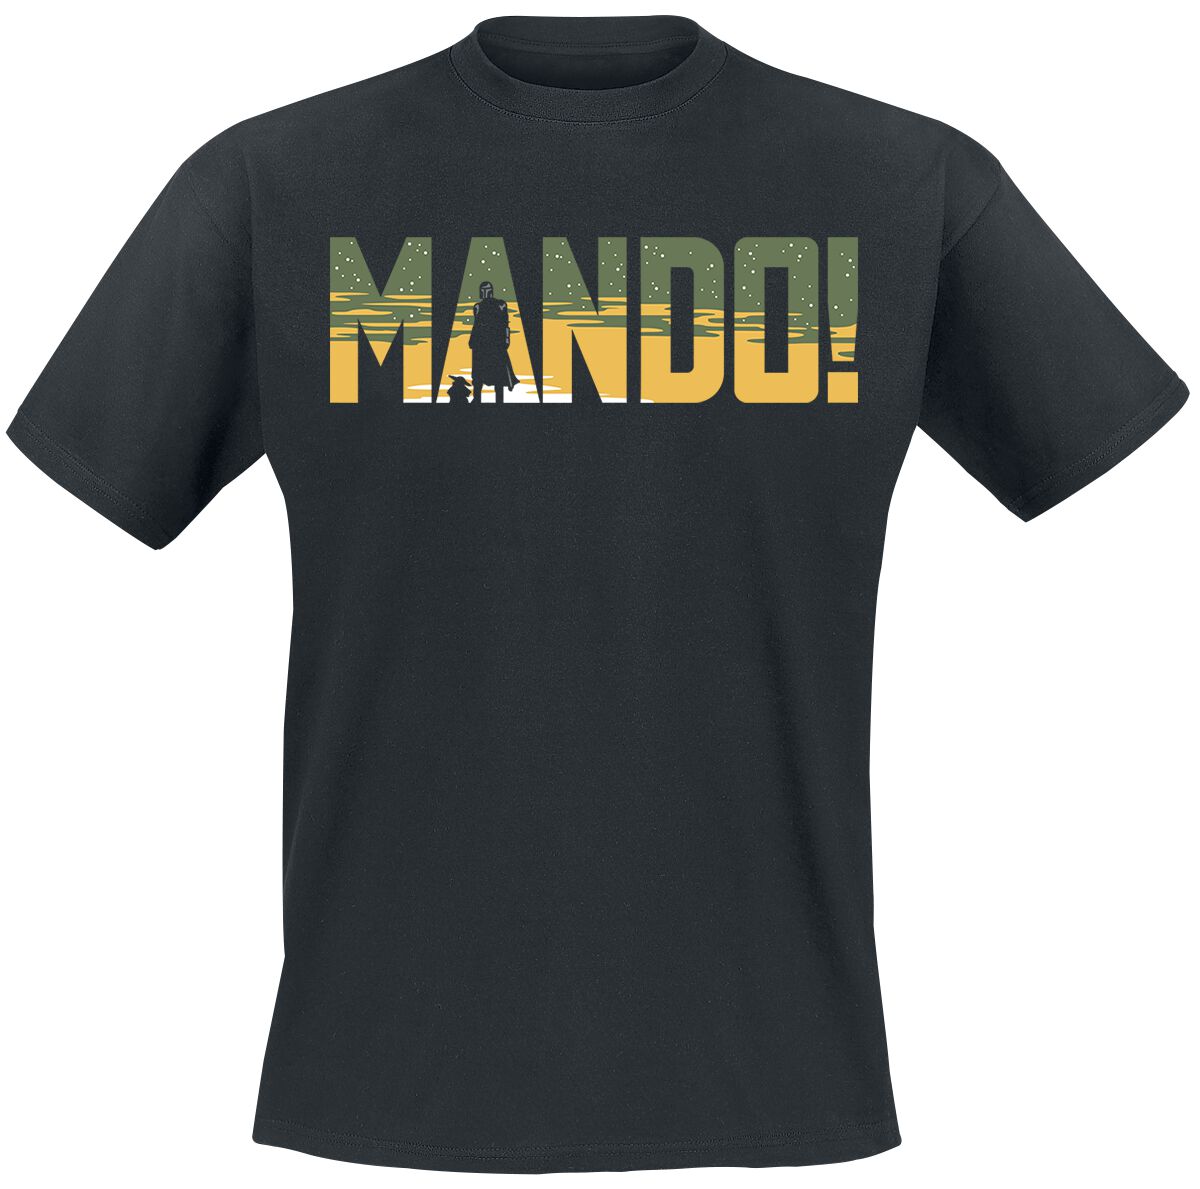 Star Wars T-Shirt - The Mandalorian - Season 3 - Mando - S bis XXL - für Männer - Größe XXL - schwarz  - EMP exklusives Merchandise!